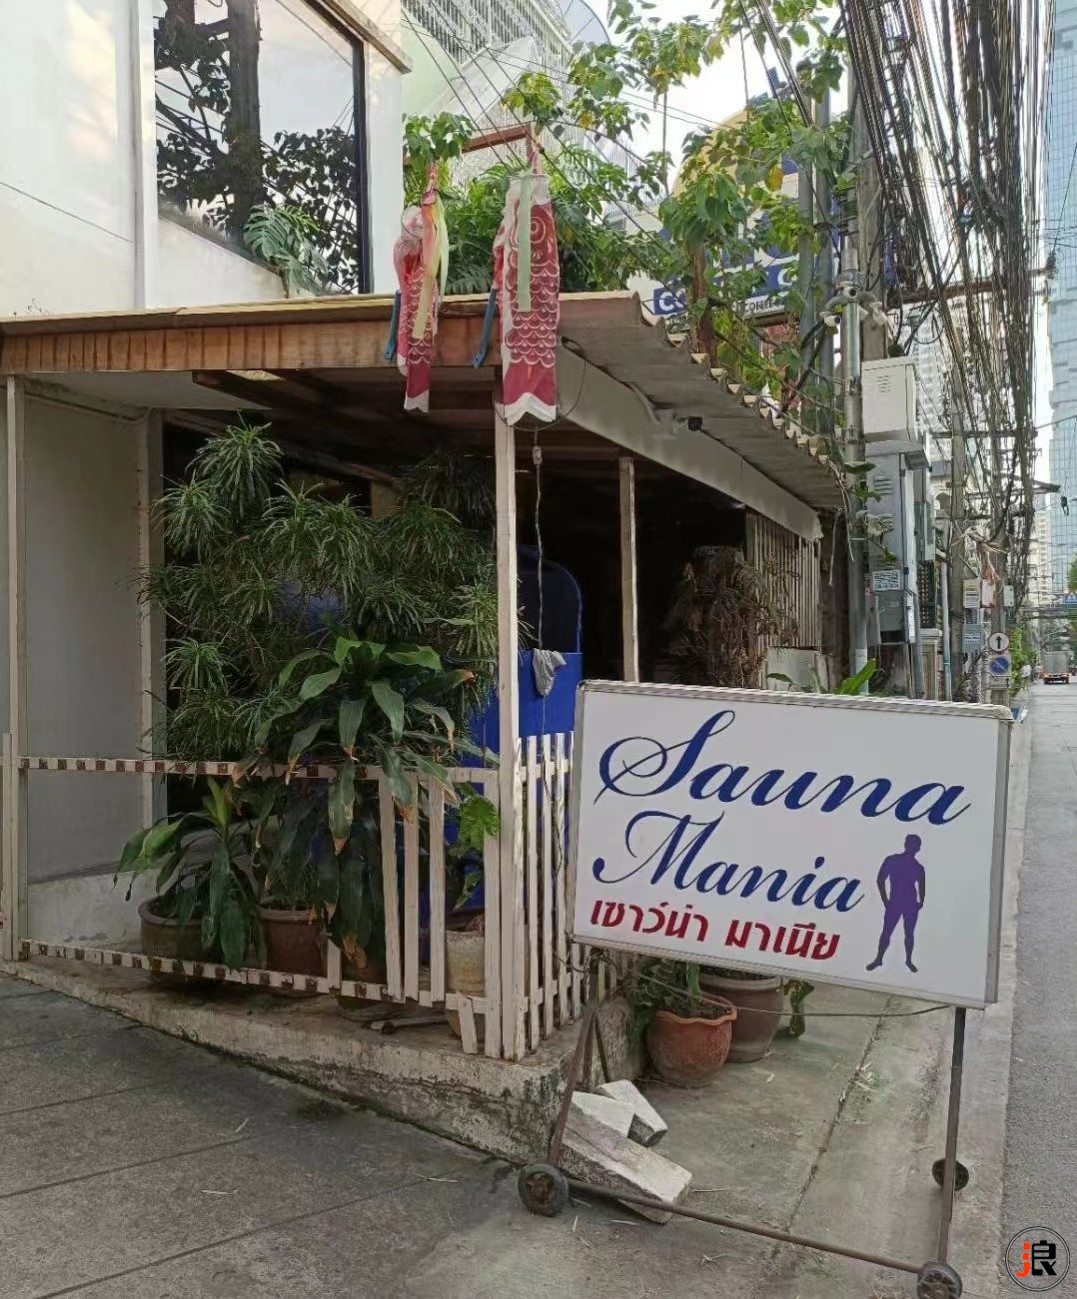 曼谷（是隆）同志桑拿Mania Sauna 中国游客多  主打肌肉风格